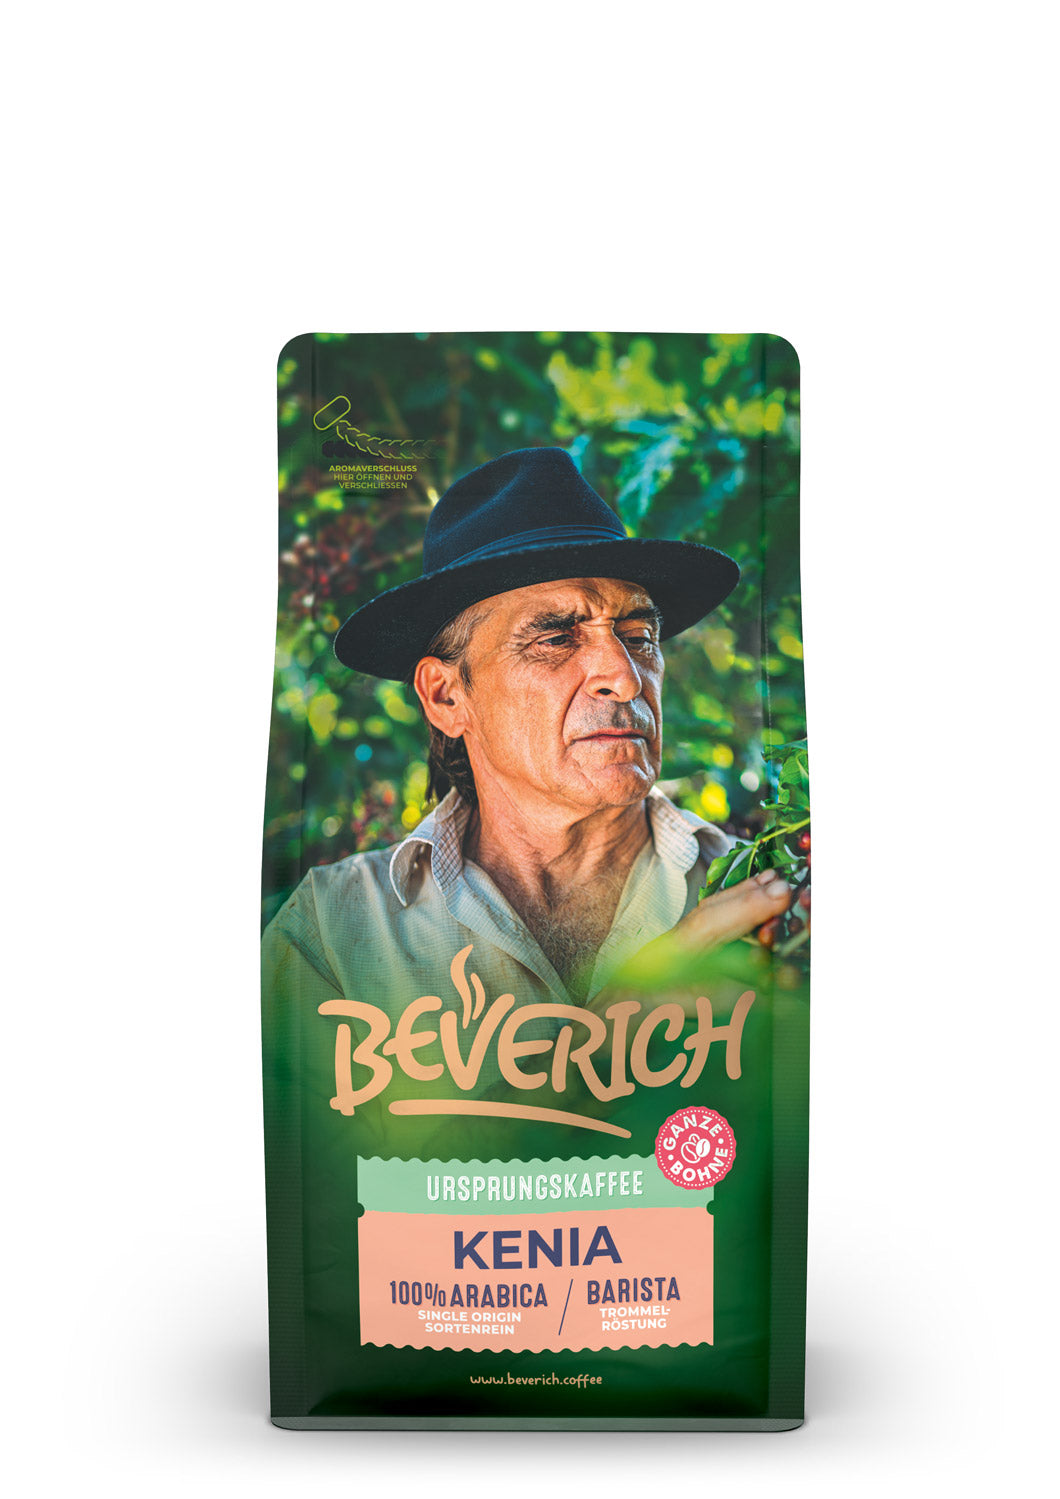 BEVERICH - Ursprungskaffee "Kenia" (250g)